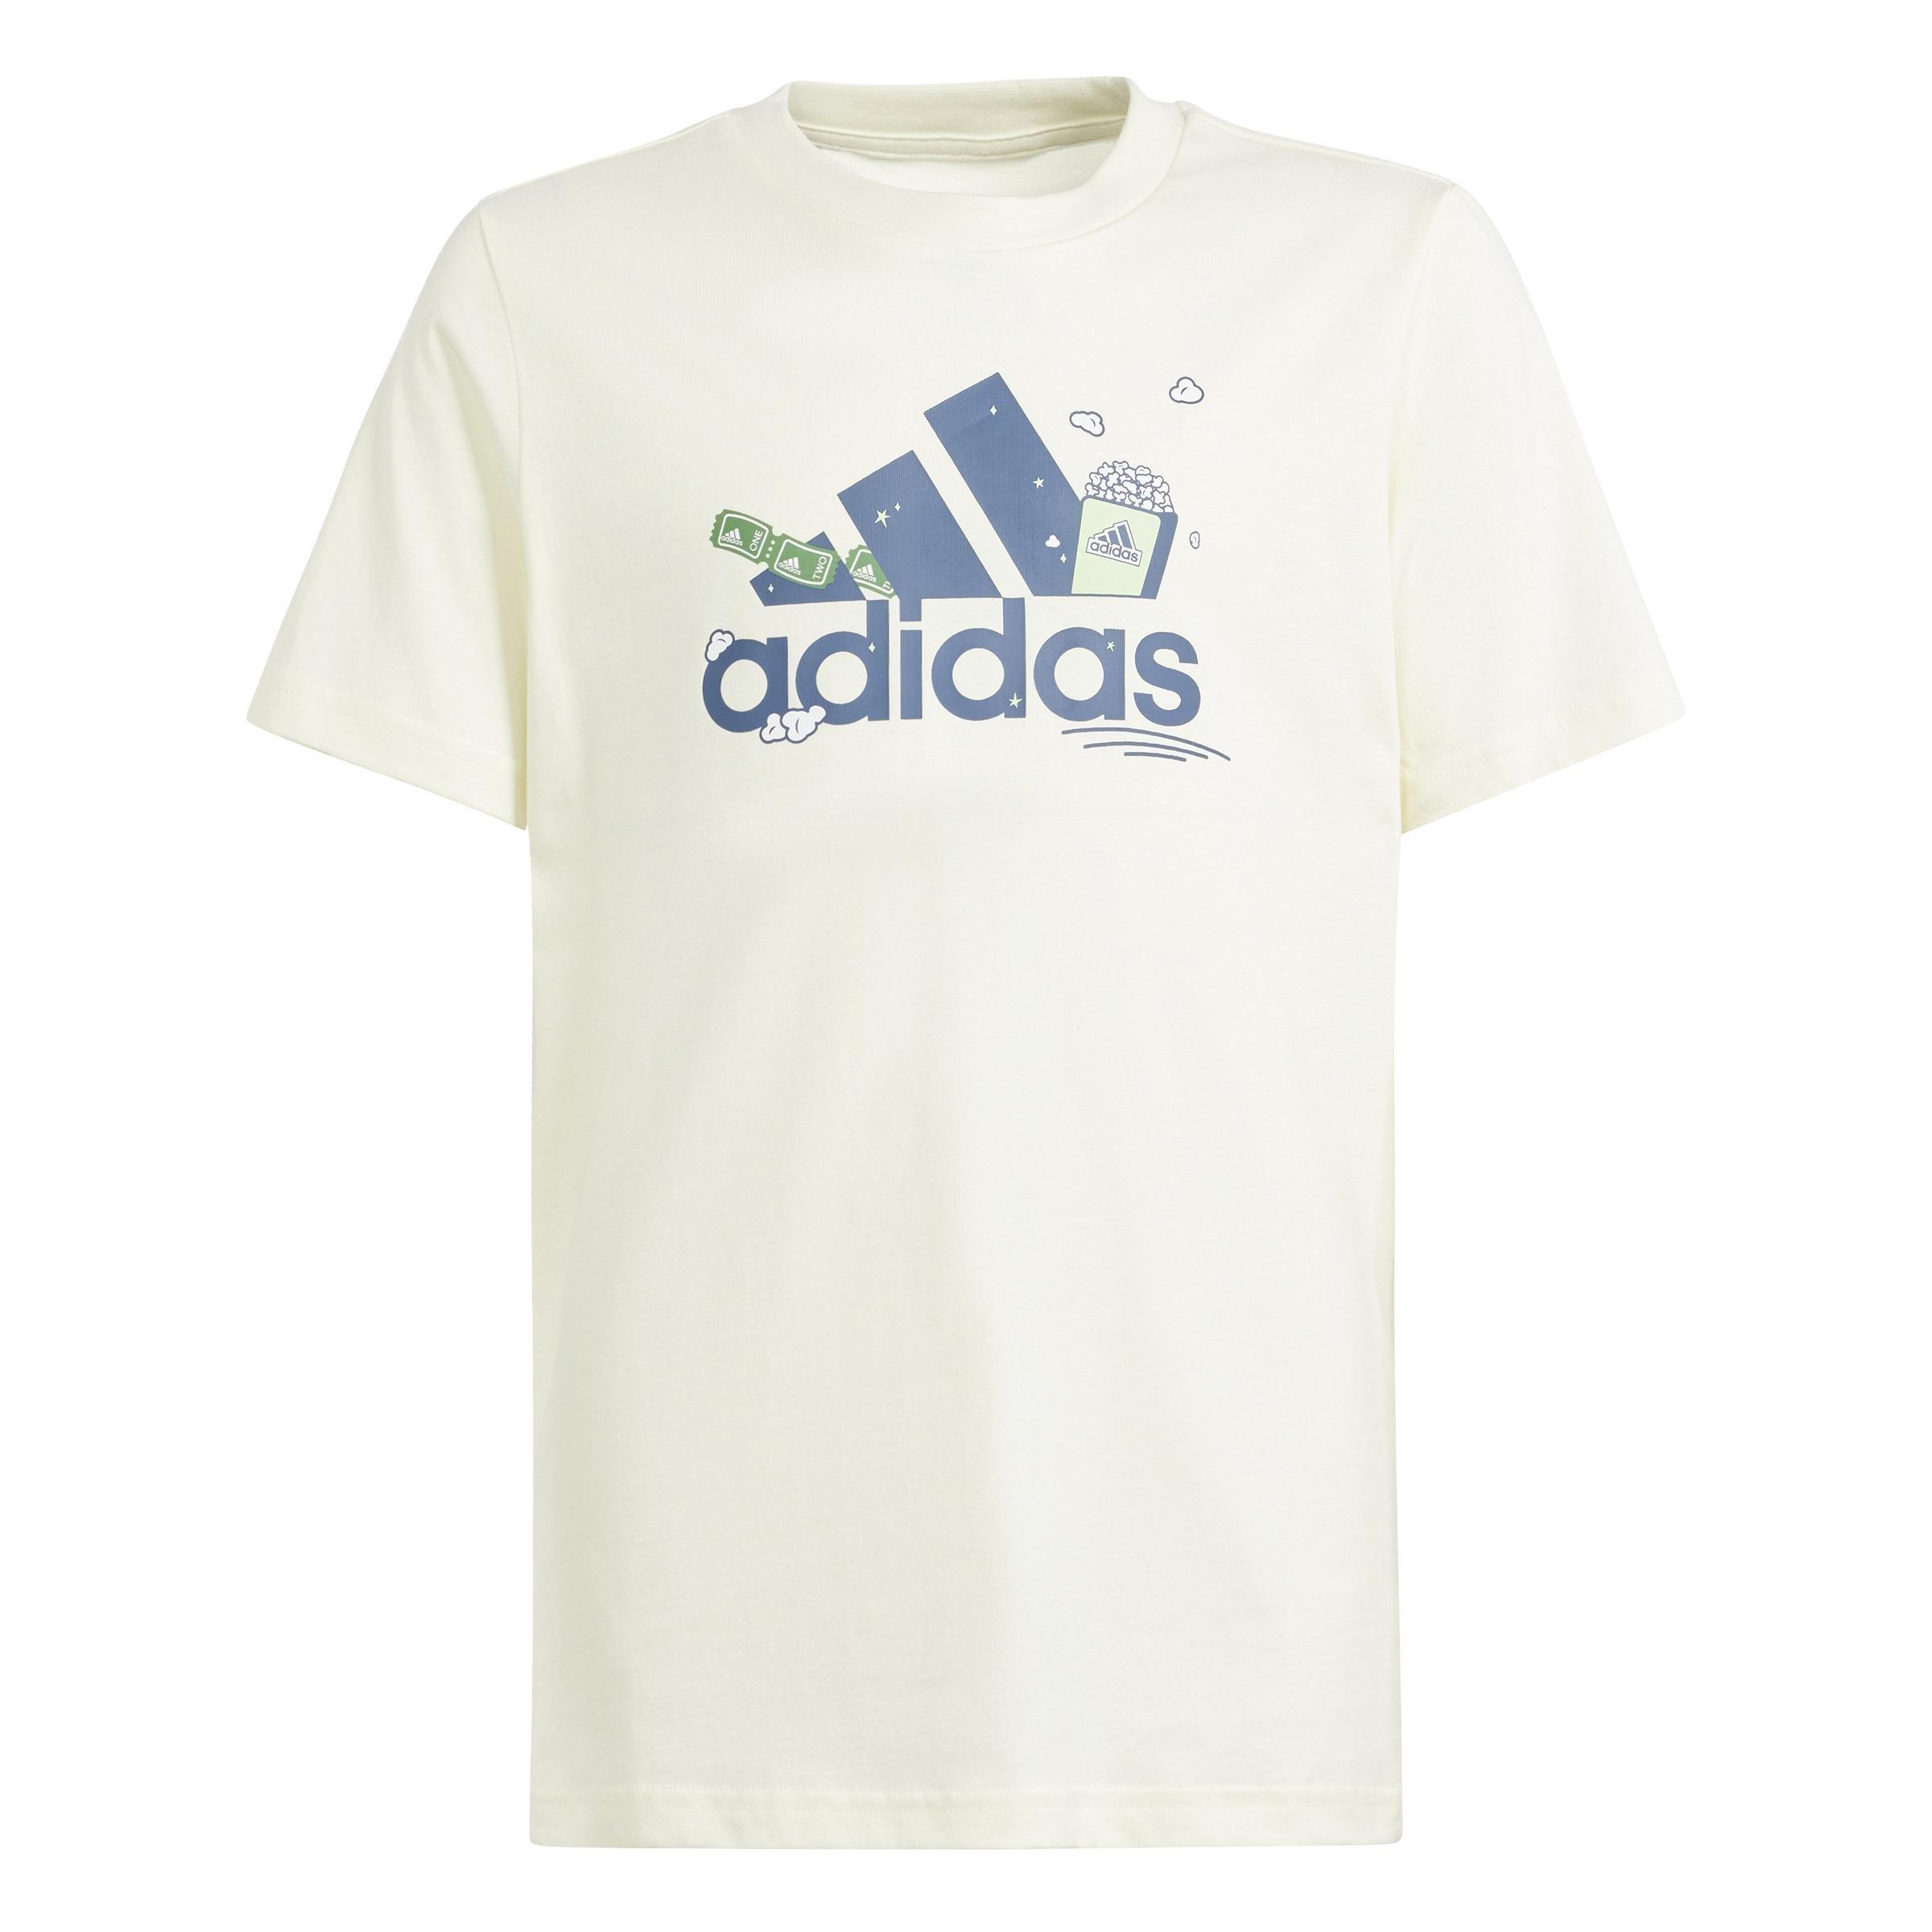 adidas - Kids Unisex Brand Love Graphic T-Shirt, Beige